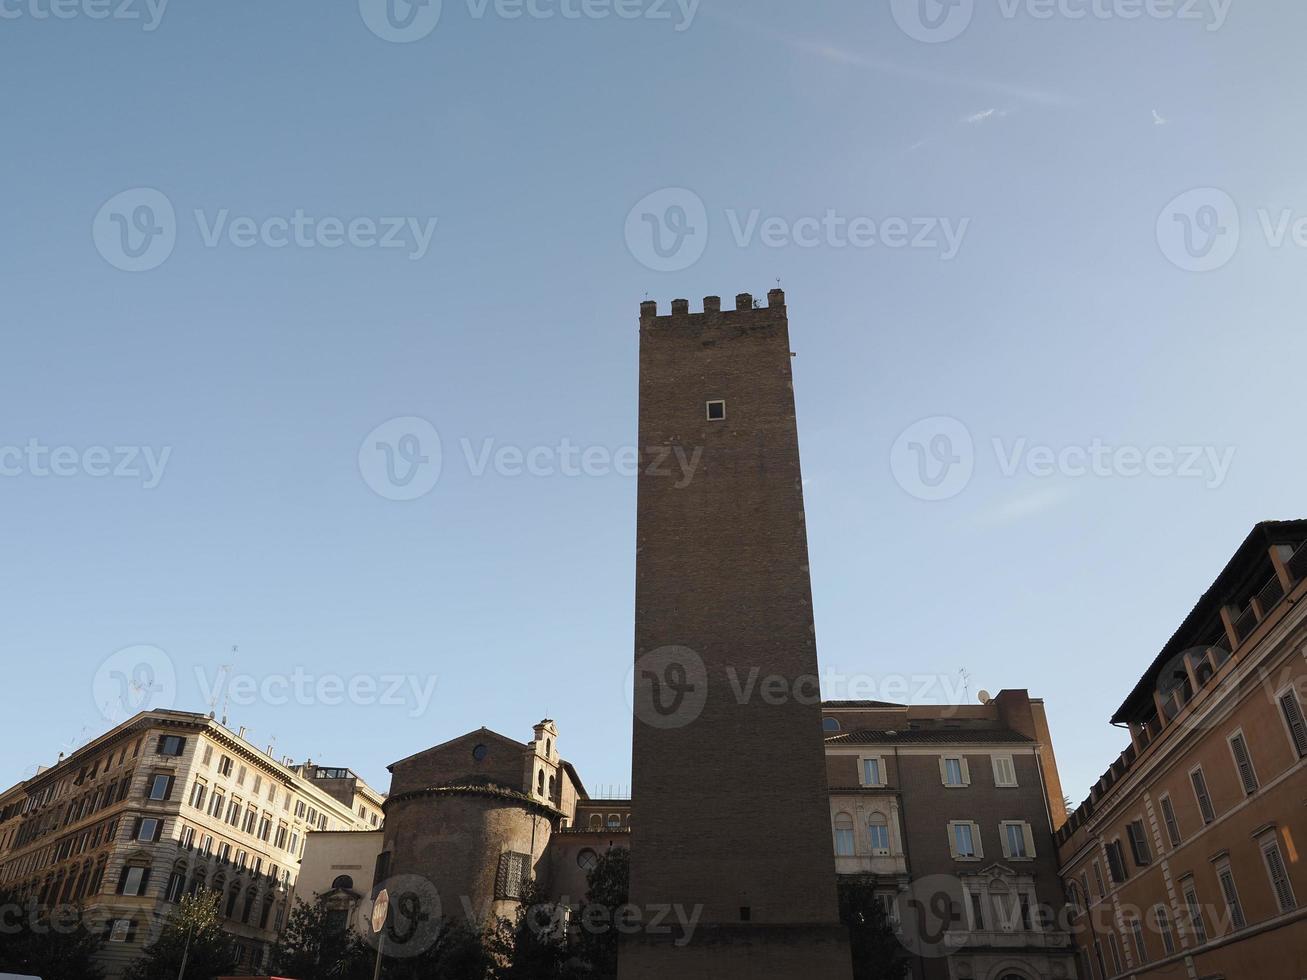 vista dos edifícios do distrito de roma monti foto